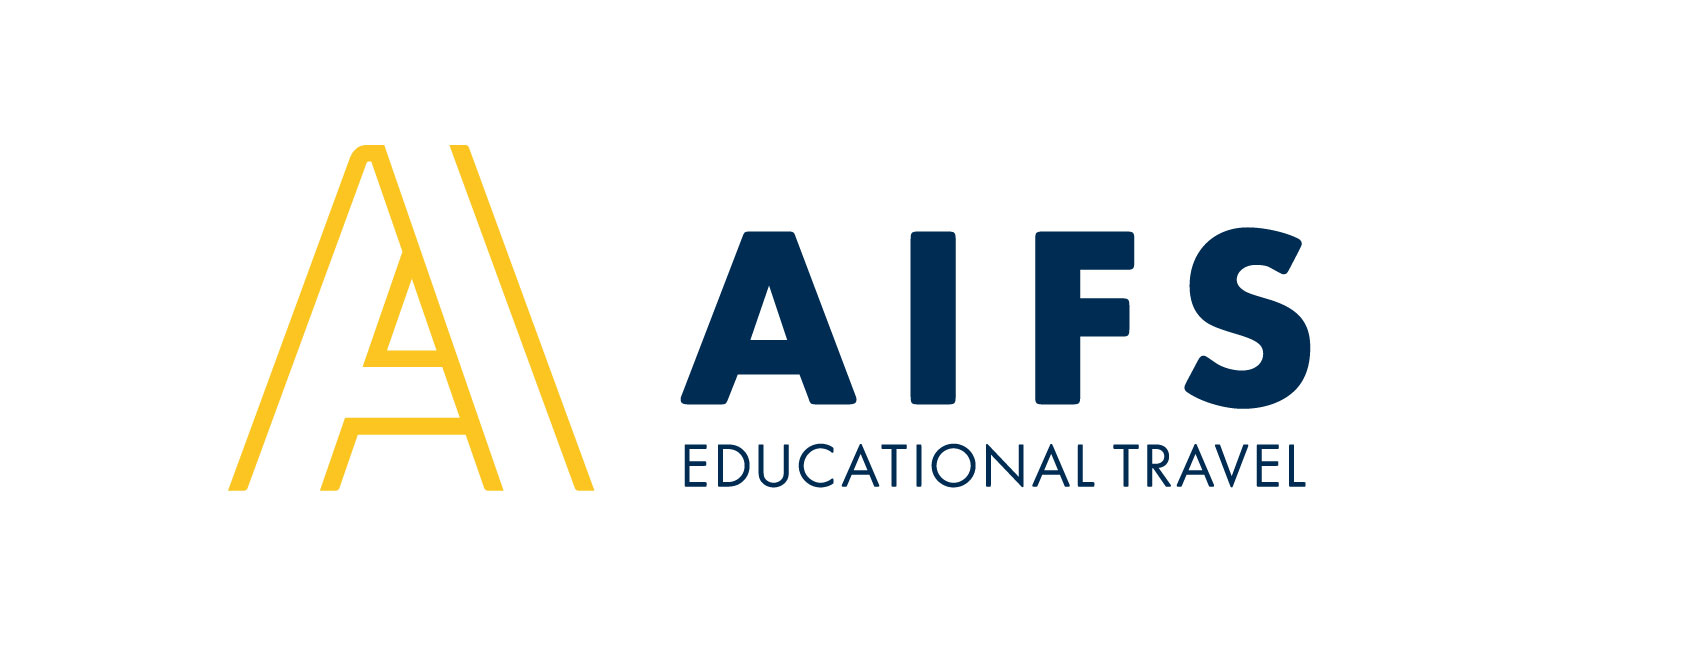 Dein Auslandsjahr – häufige Fragen zum Schüleraustausch - AIFS Blog